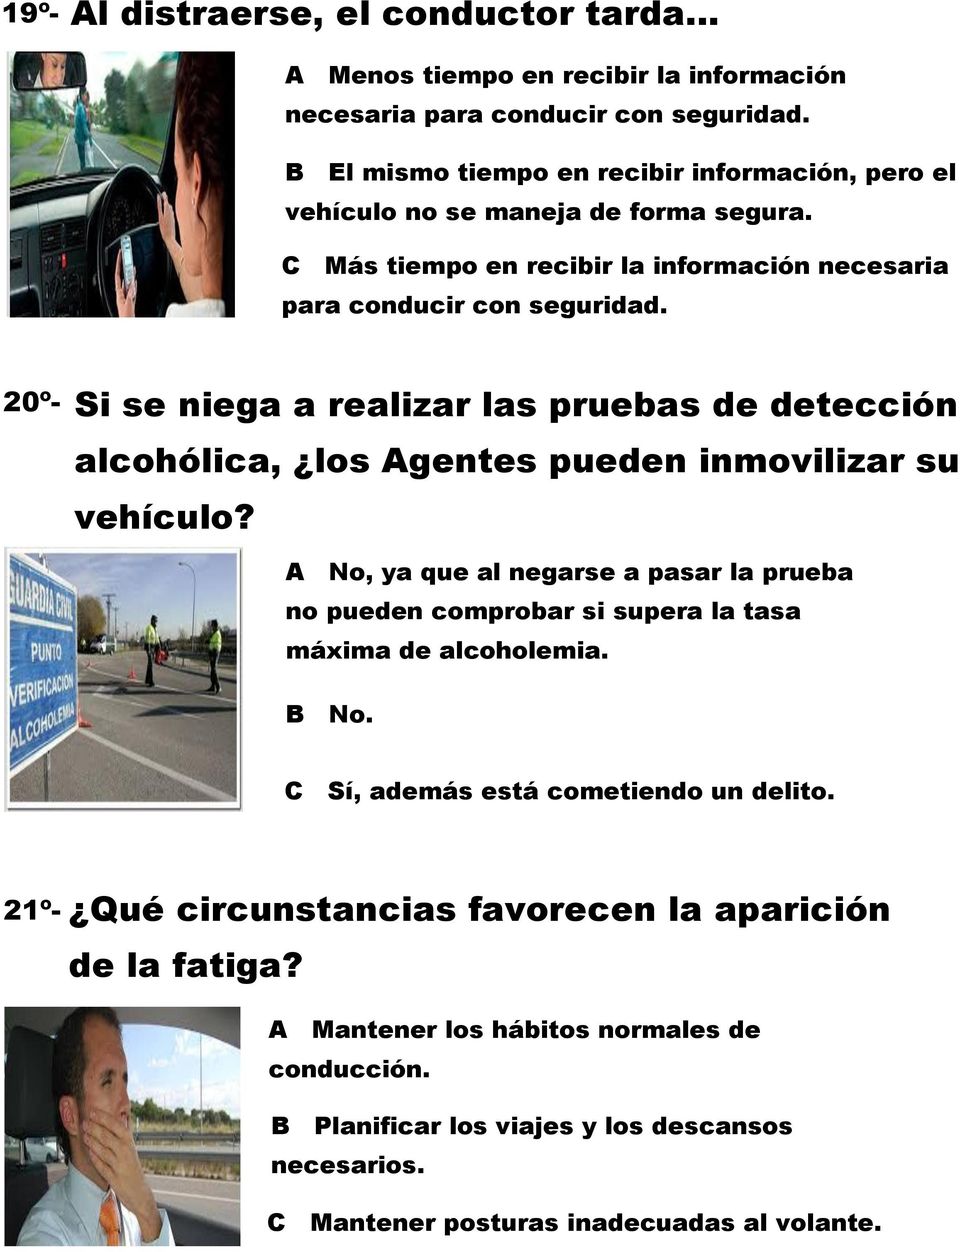 20º- Si se niega a realizar las pruebas de detección alcohólica, los Agentes pueden inmovilizar su vehículo?